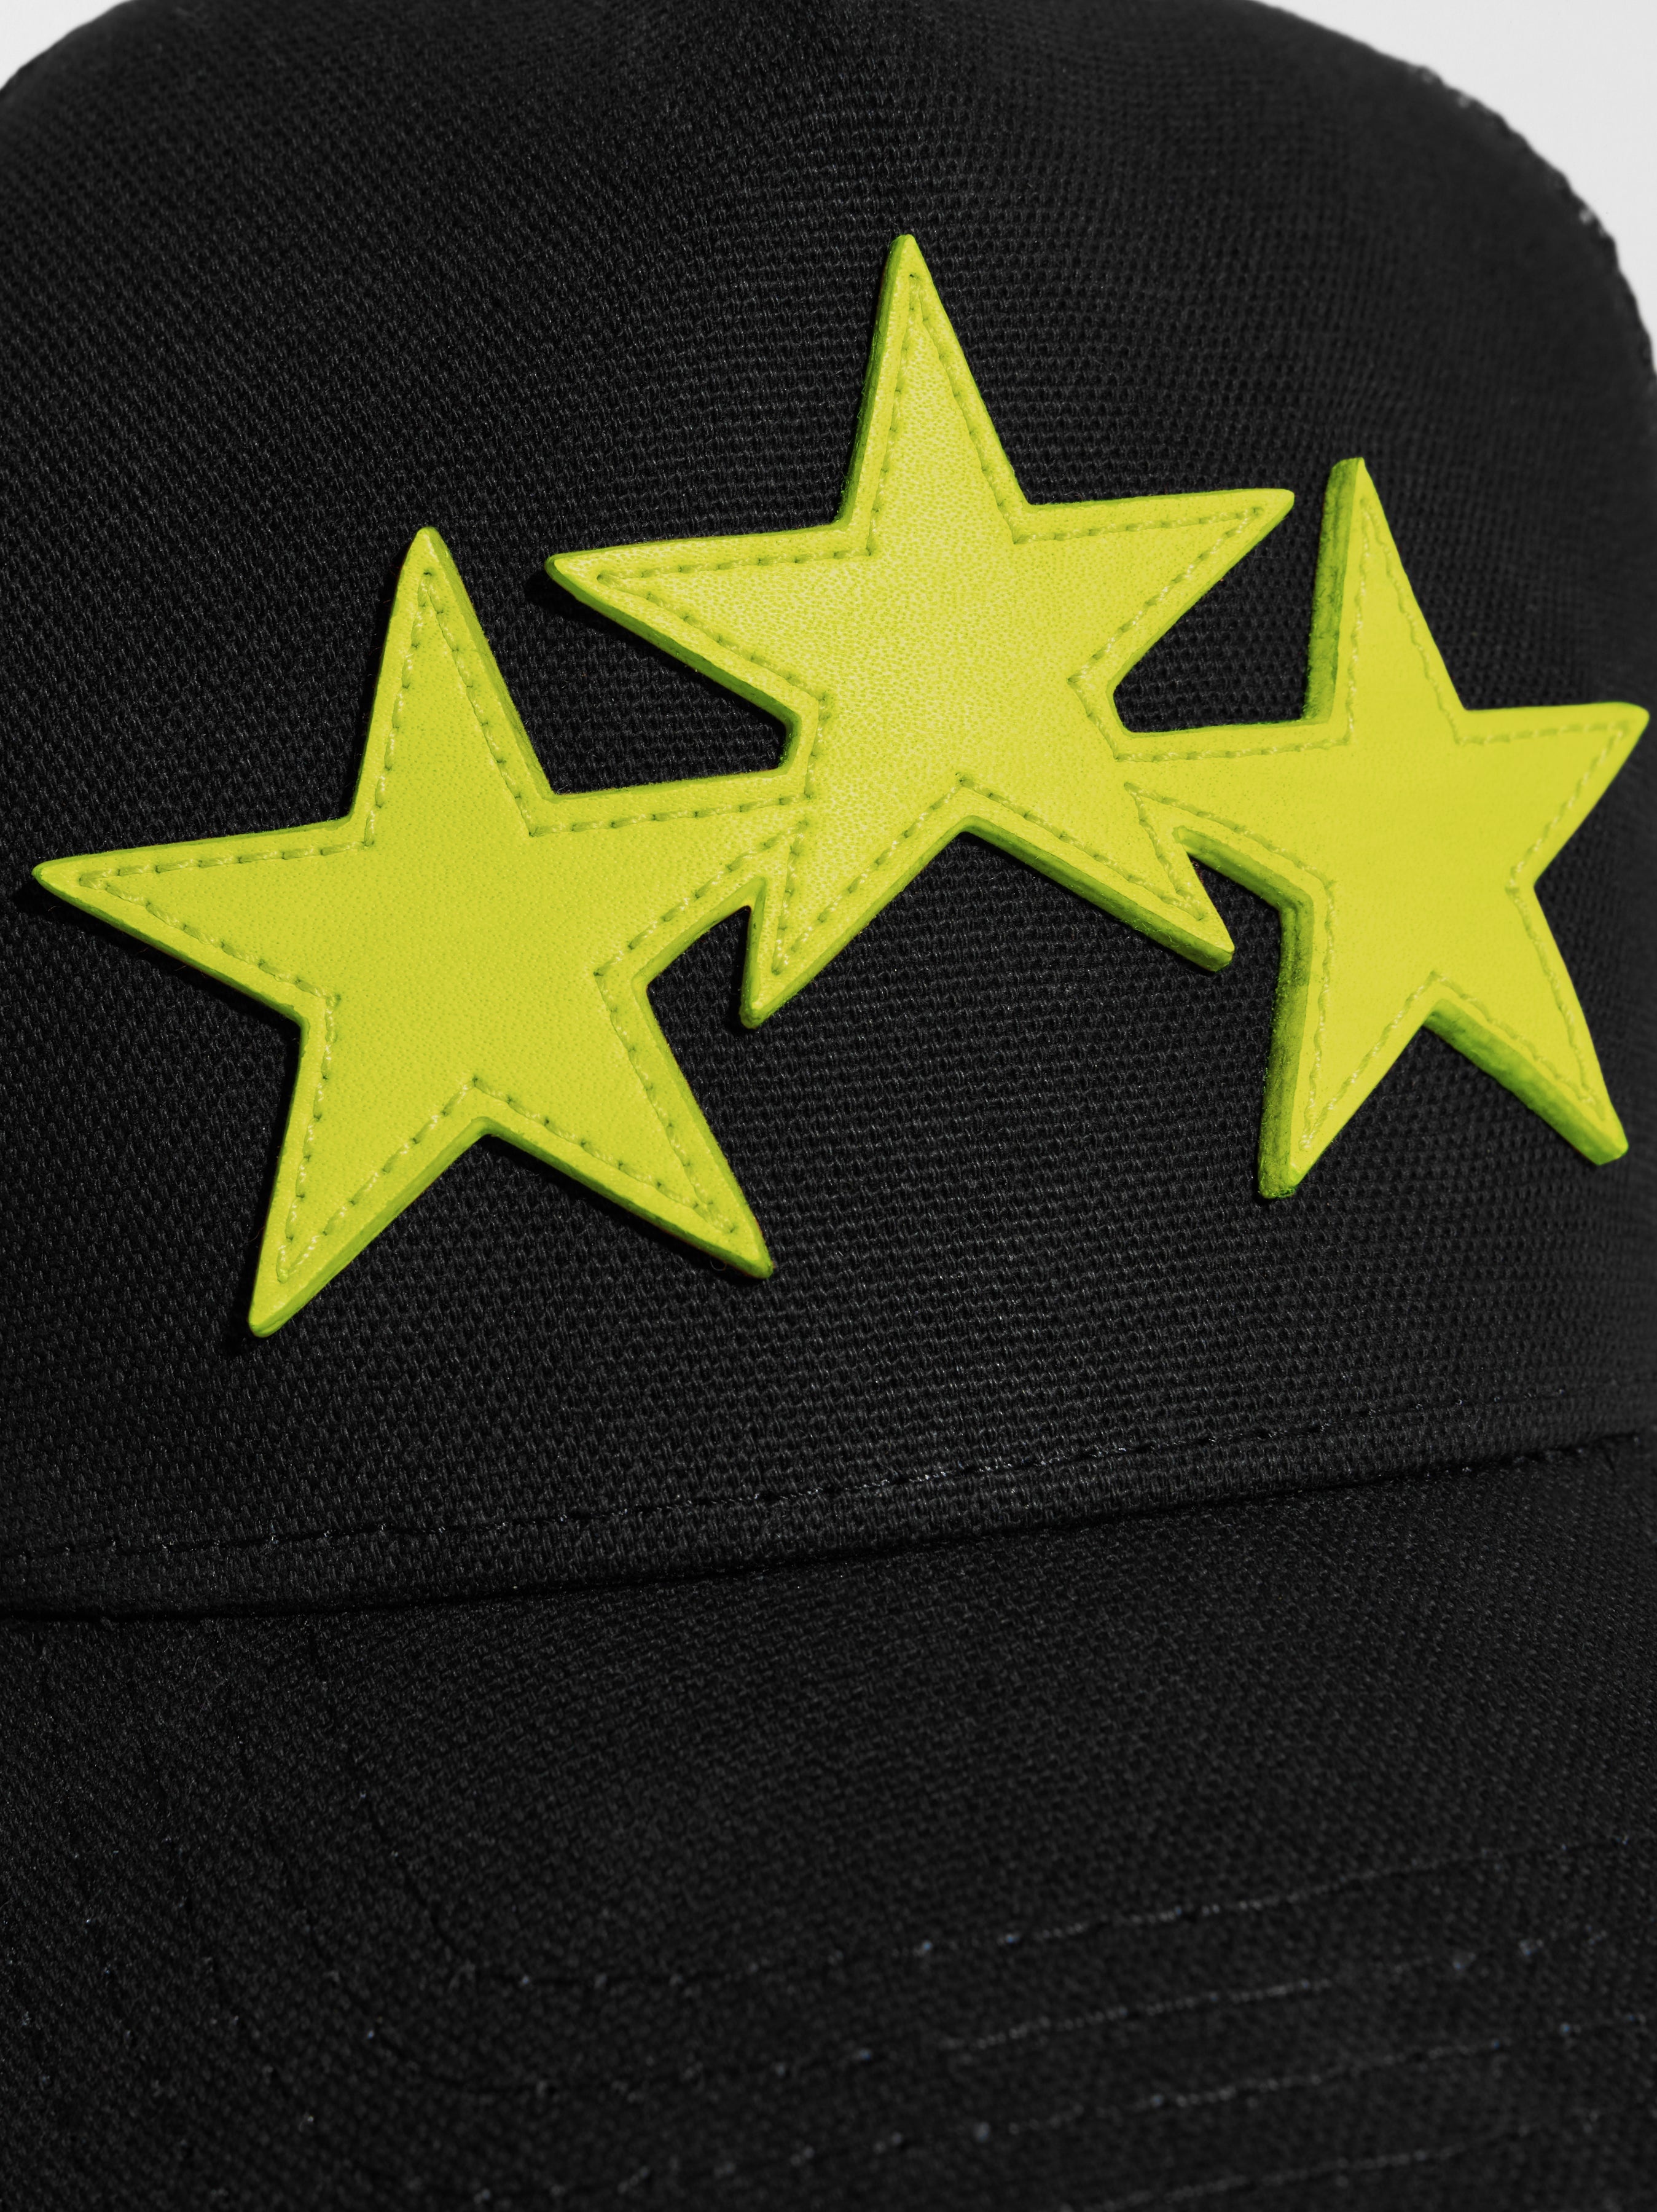 THREE STAR TRUCKER HAT - 3